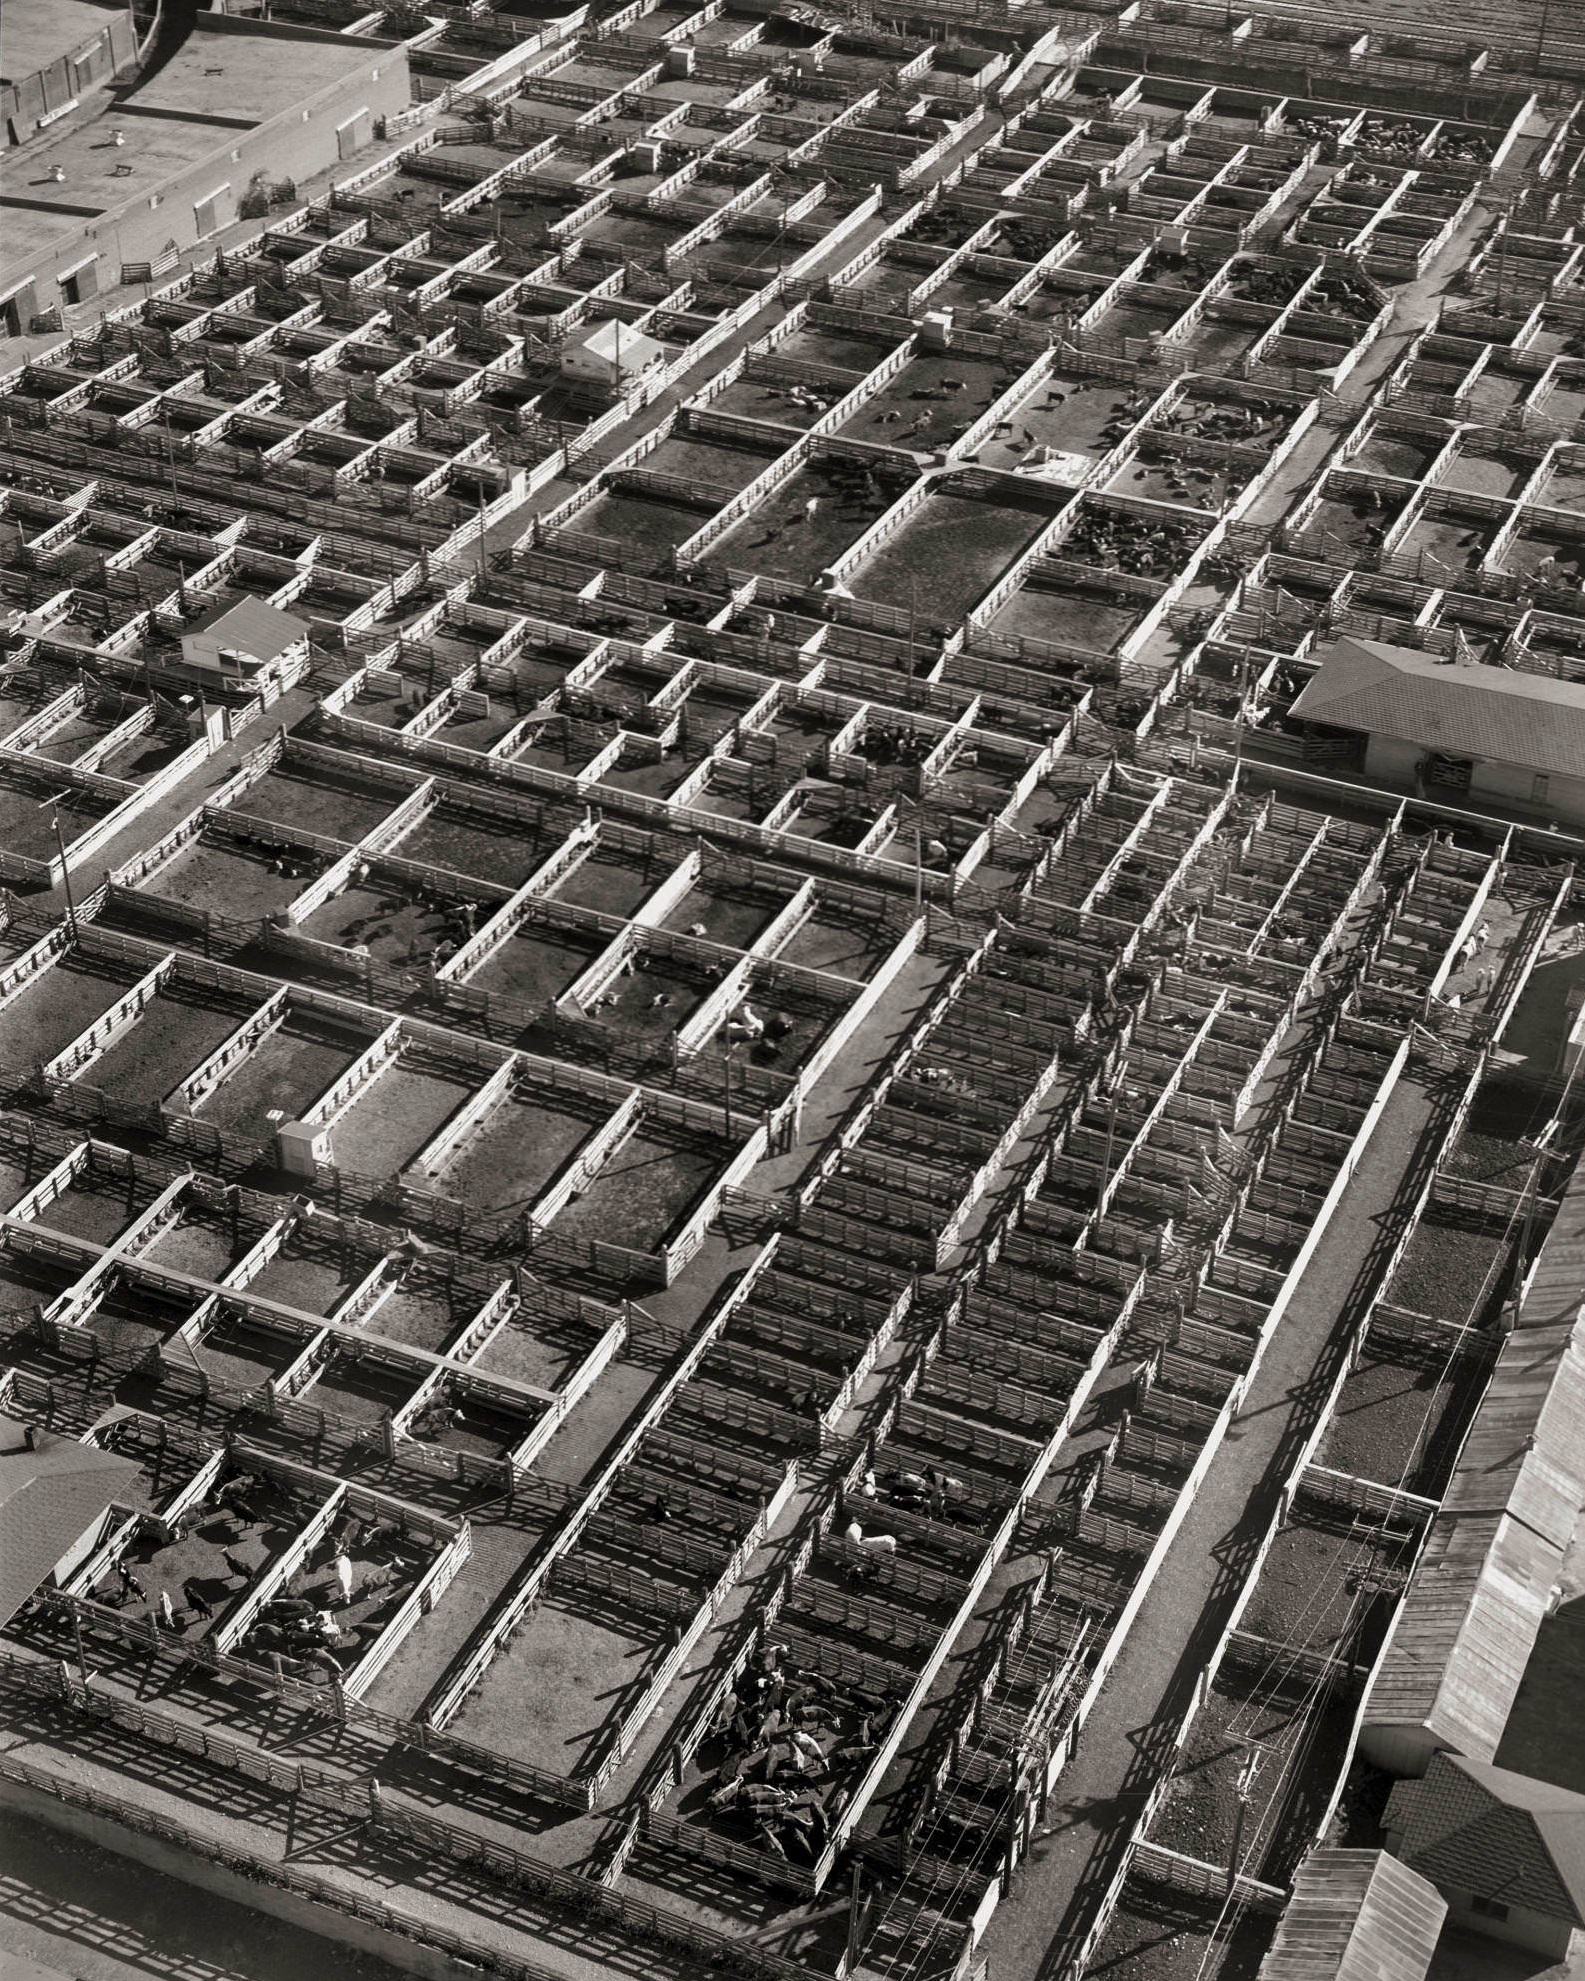 Fort Worth Stockyard, 1967